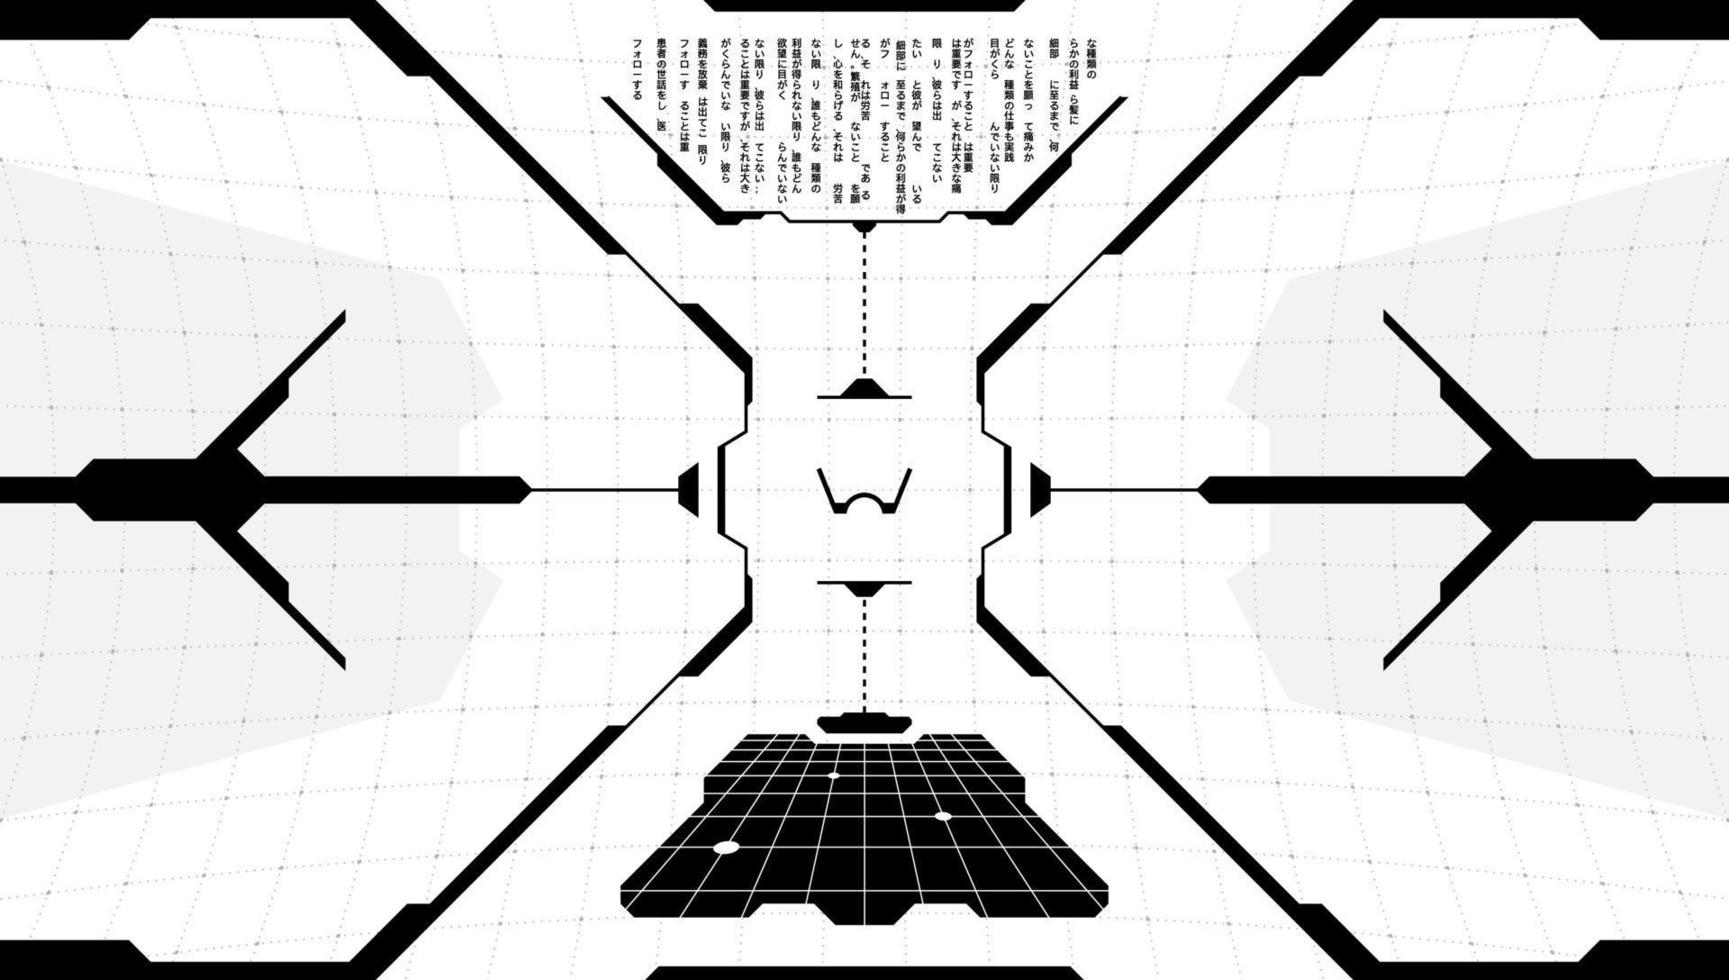 objetivo de visualización frontal de tecnología virtual vr hud. interfaz futurista digital cyberpunk pantalla de visor de alta tecnología. fui gui ui panel de tablero de mandos de cabina de nave espacial en blanco y negro con código de programa. vector